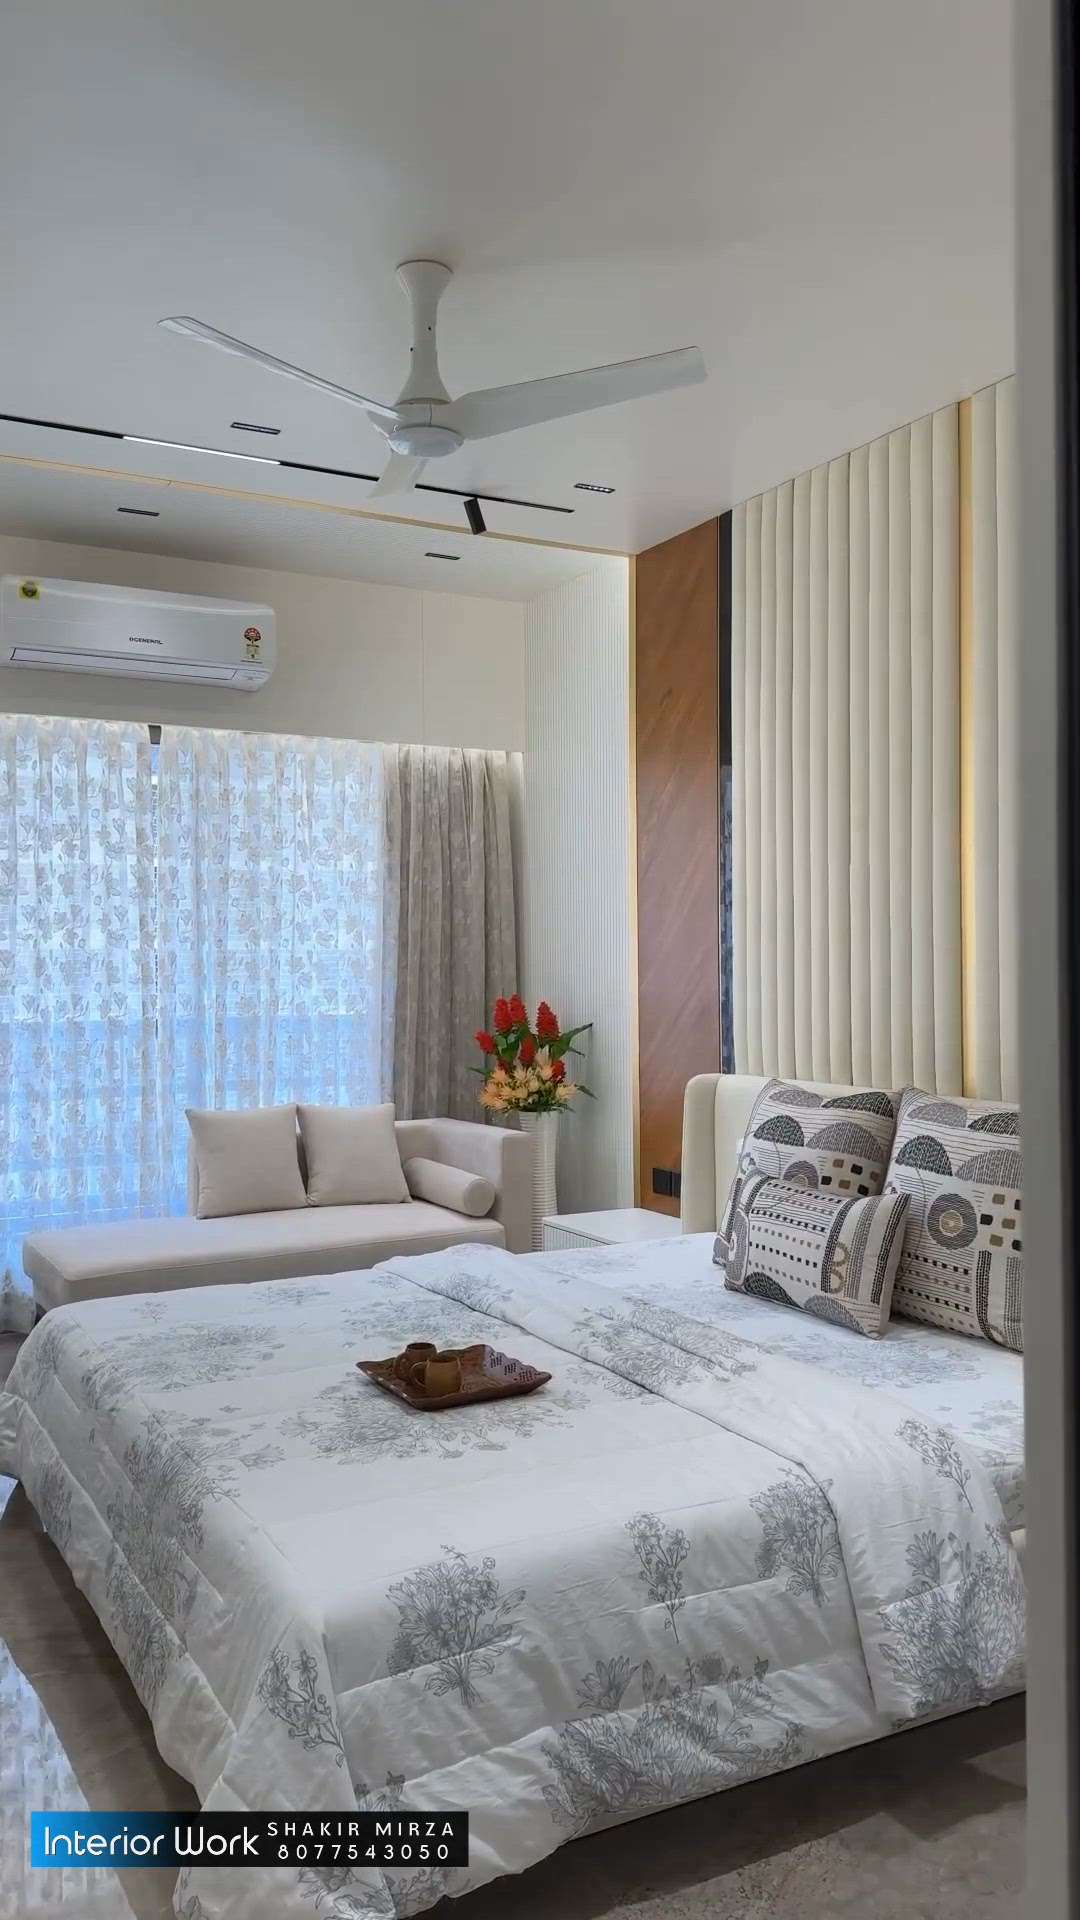 #MasterBedroom #KingsizeBedroom #bedroominteriors #wadrobedesign #ModularKitchen #modularTvunits #pujaroom #partitiondesign #WallDesigns